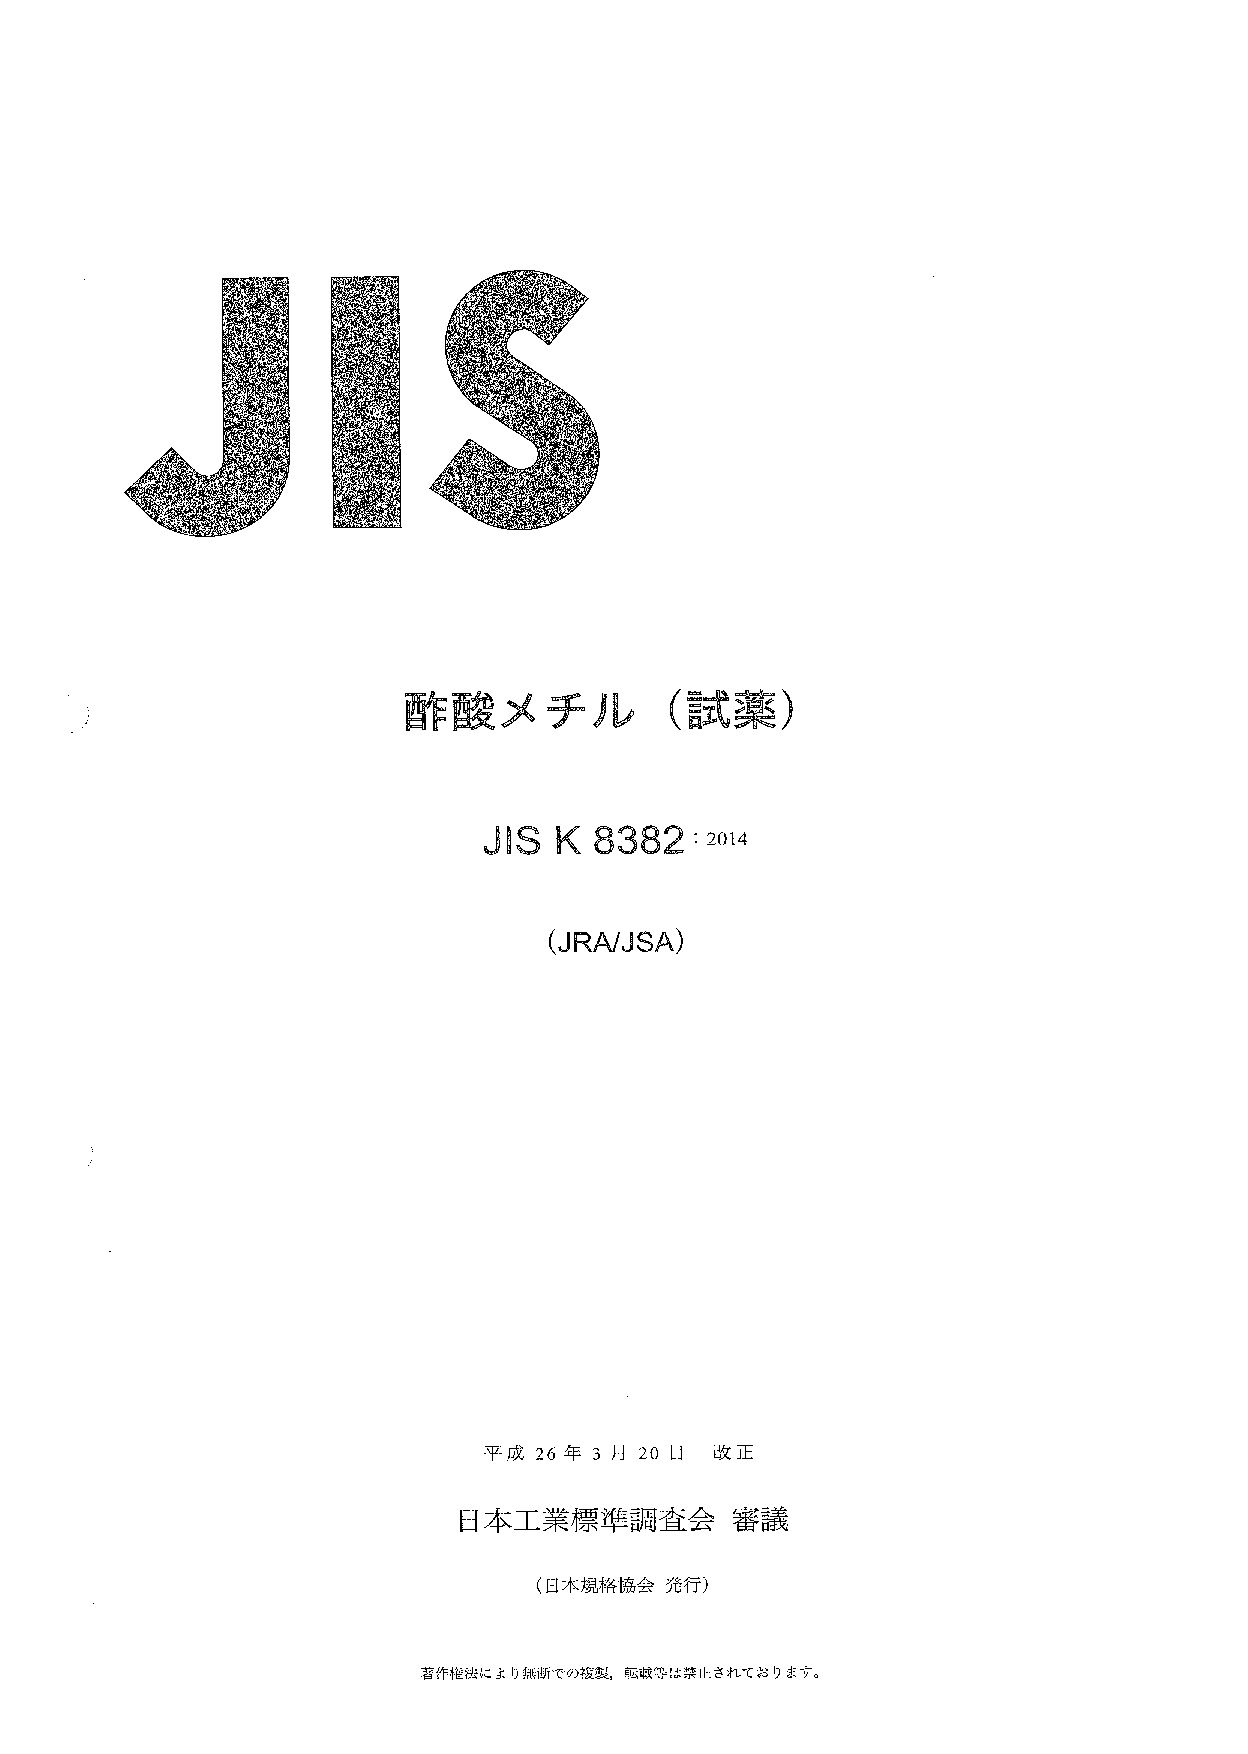 JIS K 8382:2014